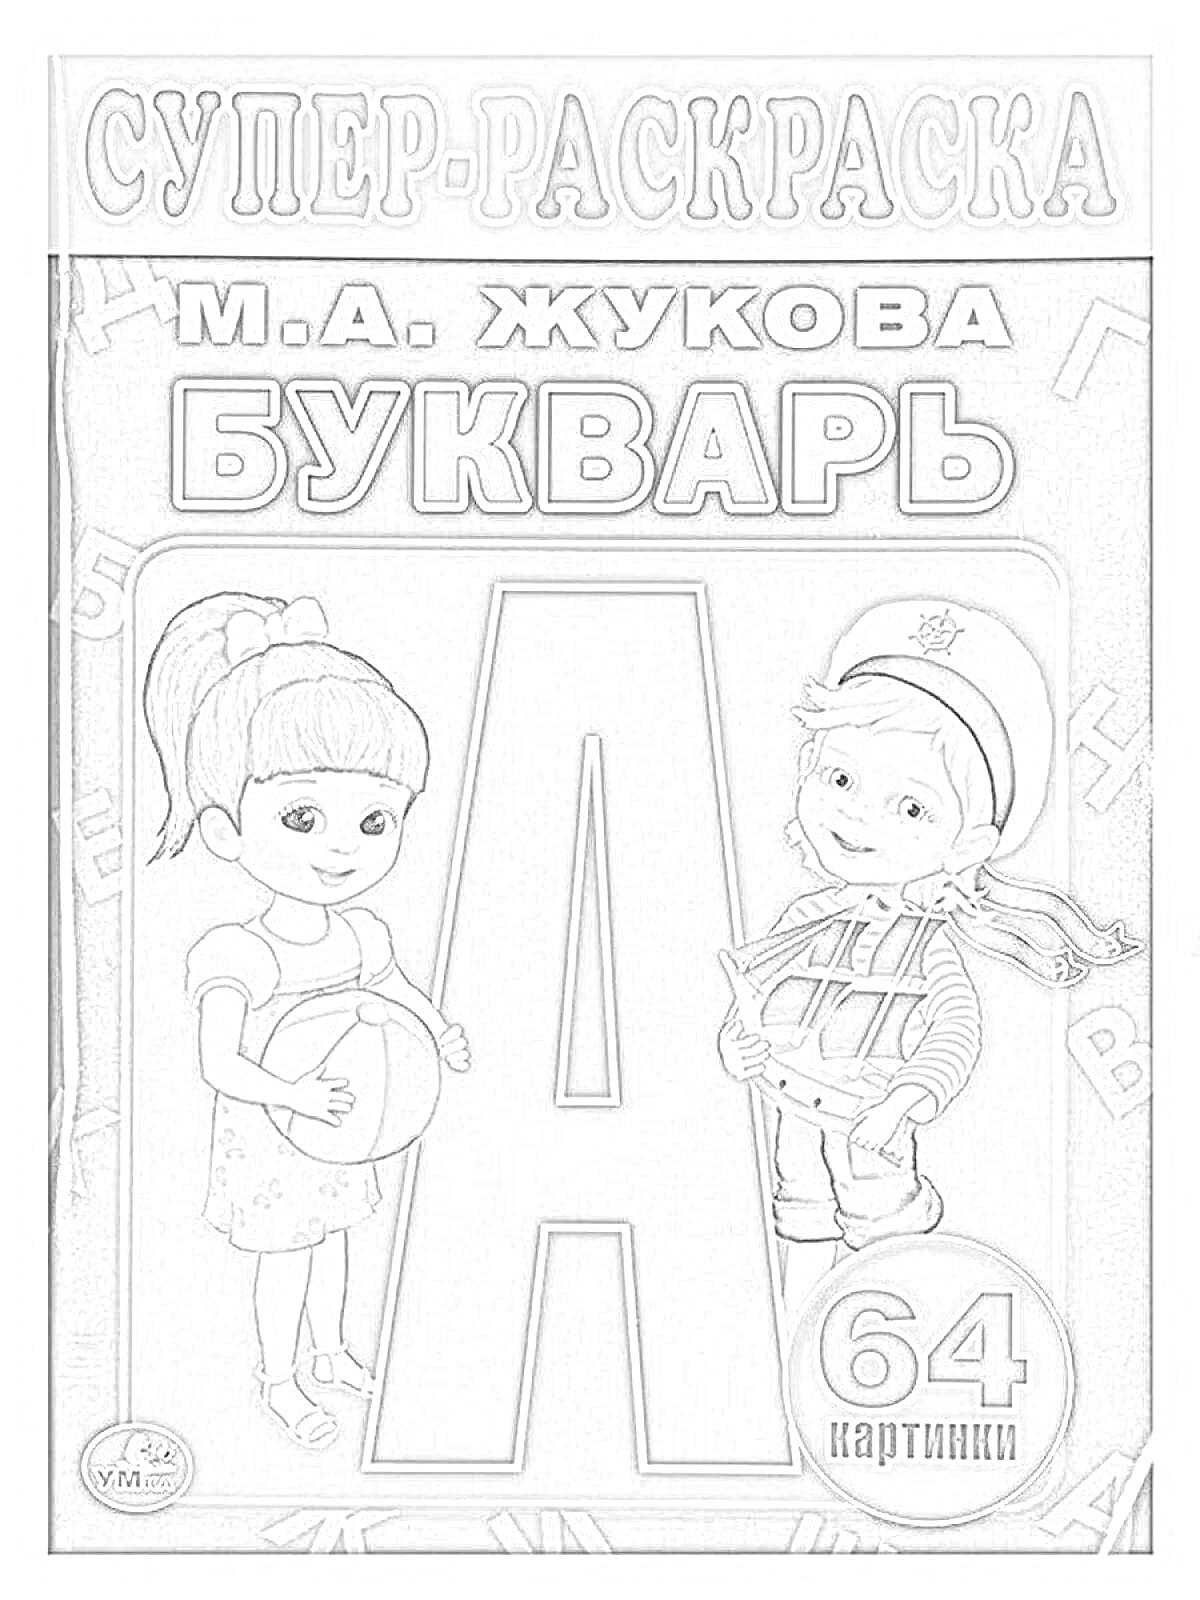 Раскраска Супер-раскраска М.А. Жукова. Букварь. 64 картинки. Девочка с мячом и мальчик с книгой.